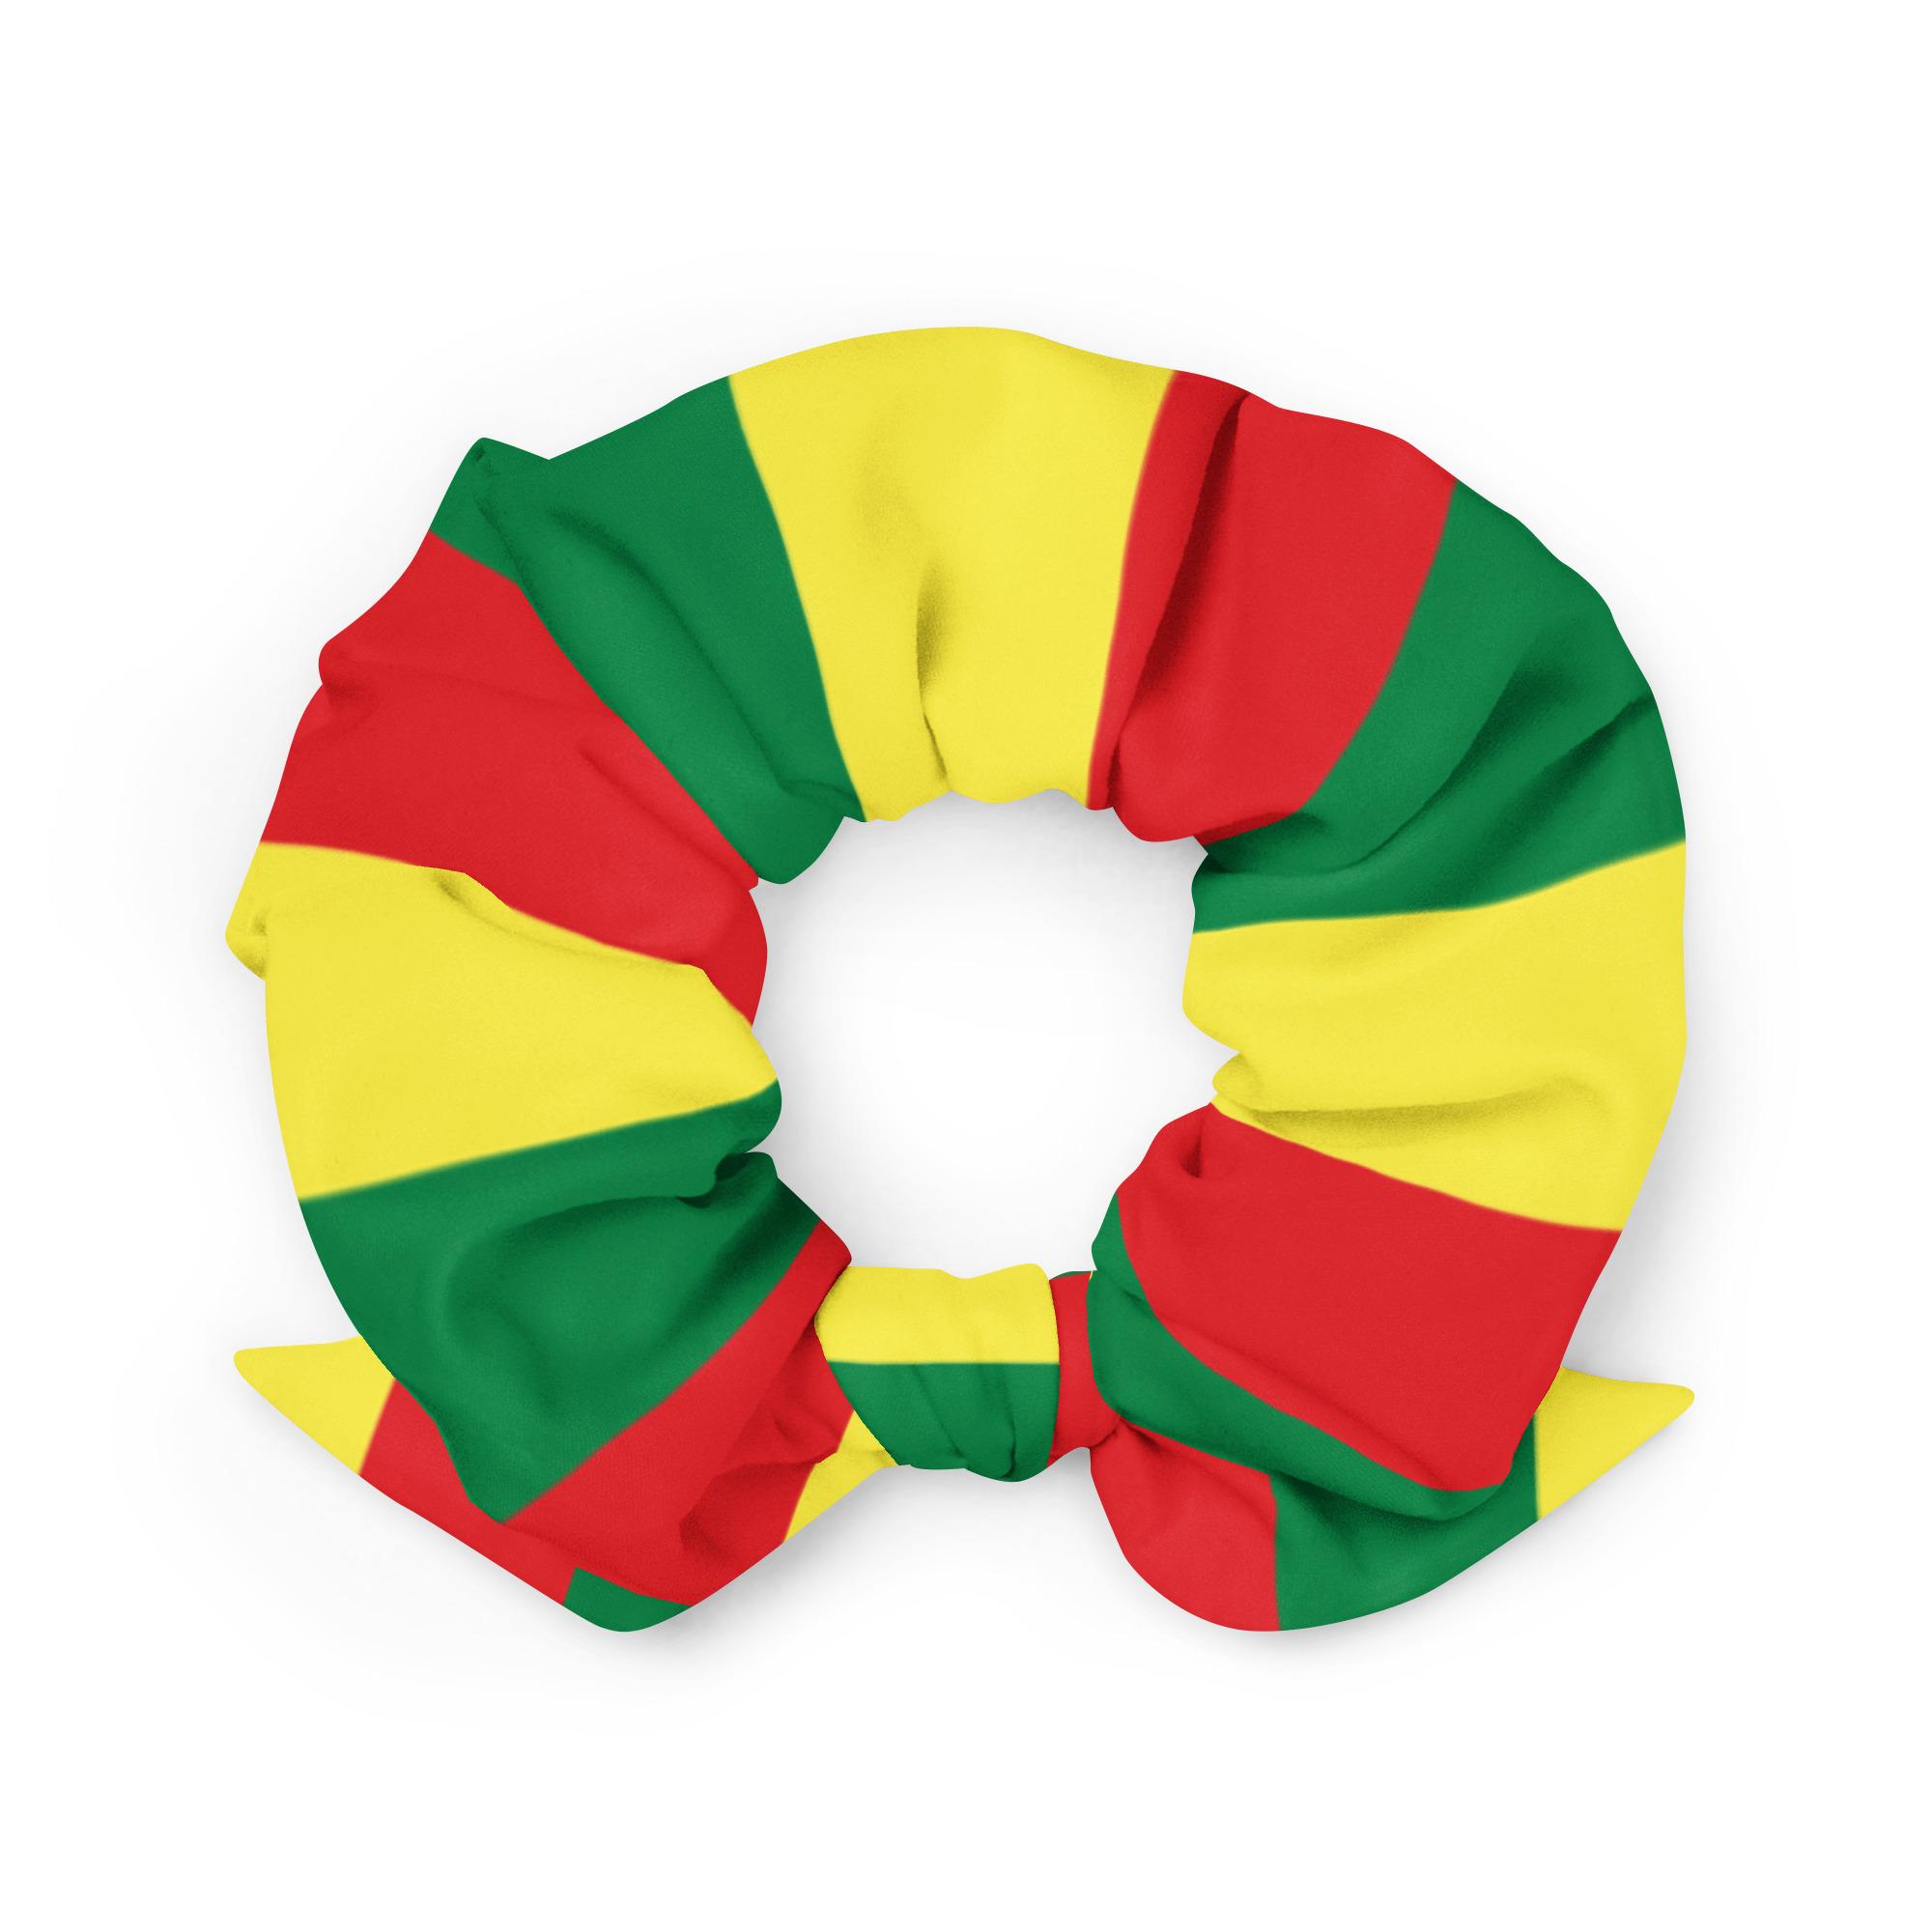 Obchod s reggae rastafariánskymi scrunchie vlasovými kravatami